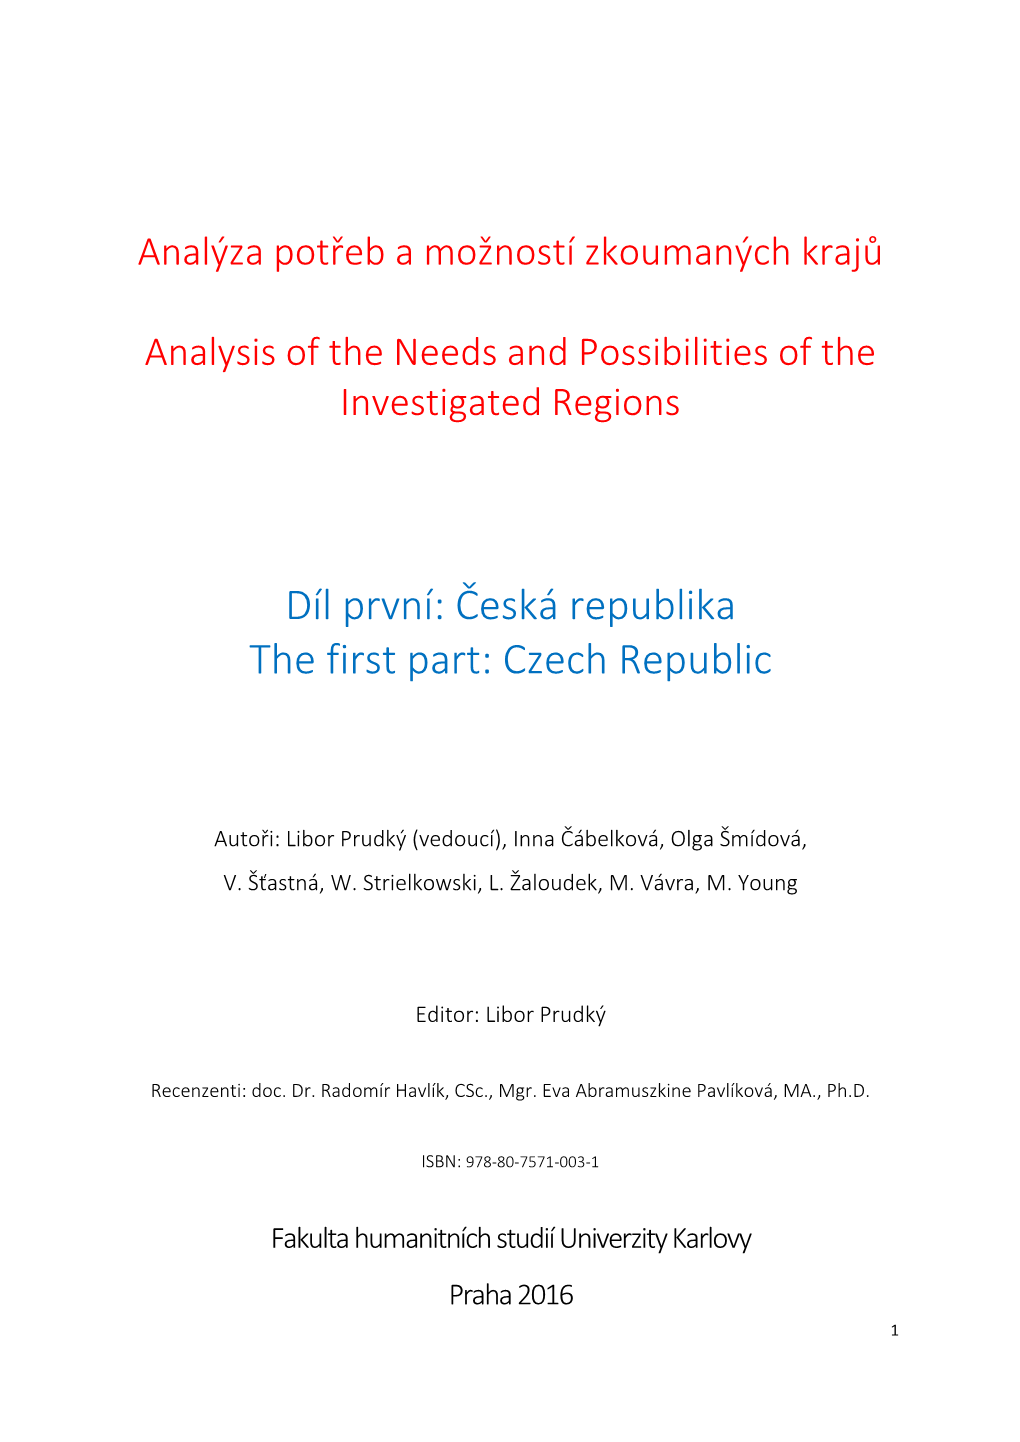 Díl První: Česká Republika the First Part: Czech Republic